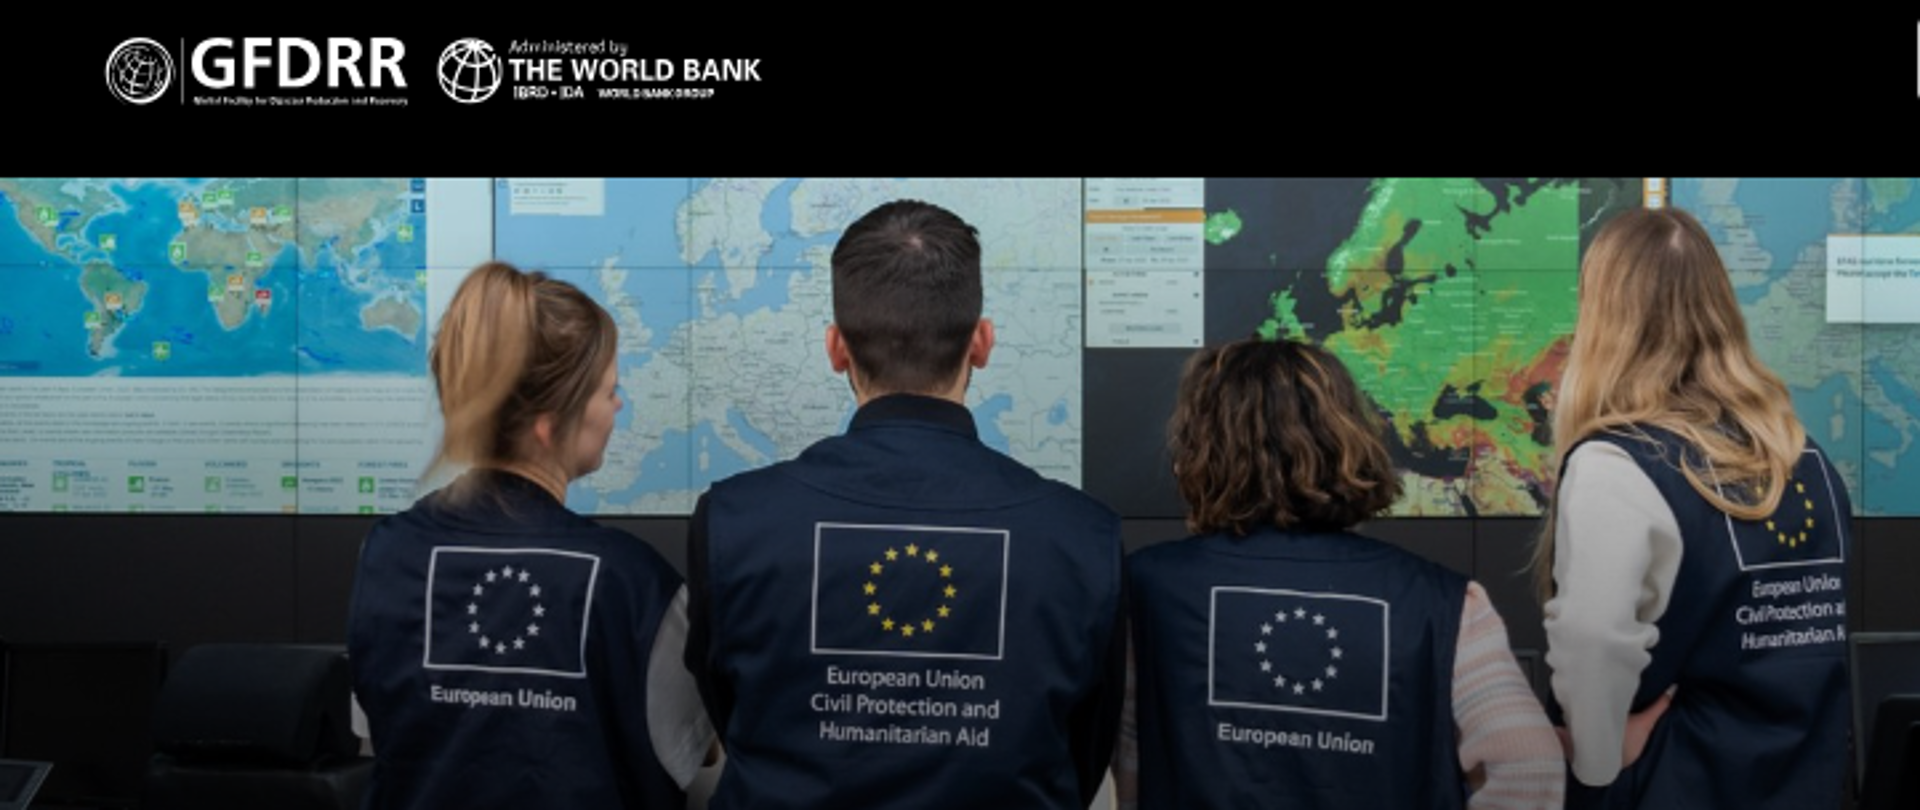 cztery osoby stoją tyłem na tle monitorów z mapami, na plecach na kamizelce mają napis European Union